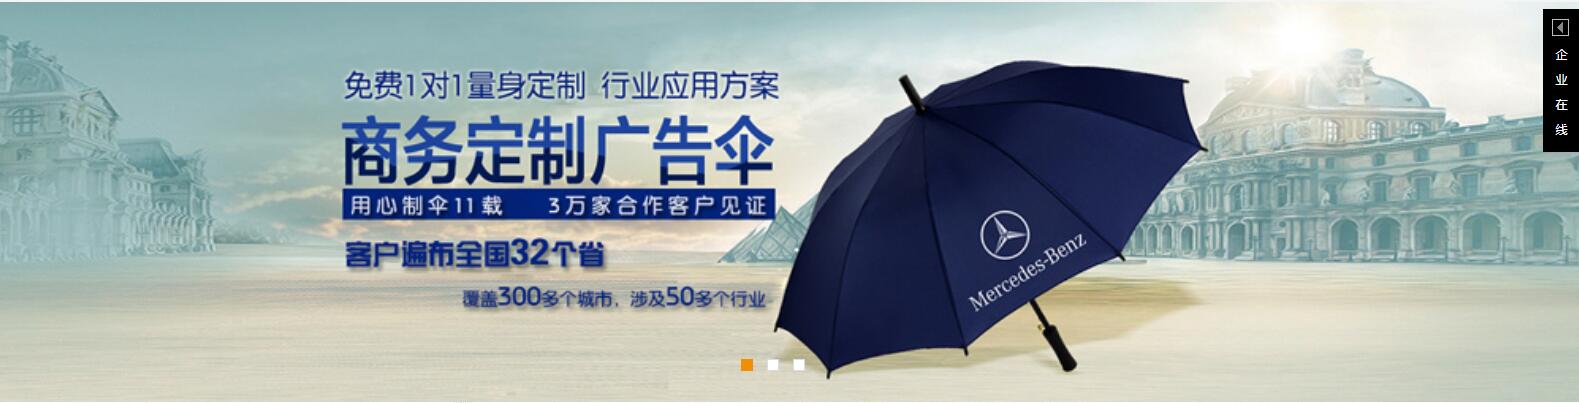 贺州太阳伞厂 贺州广告太阳伞